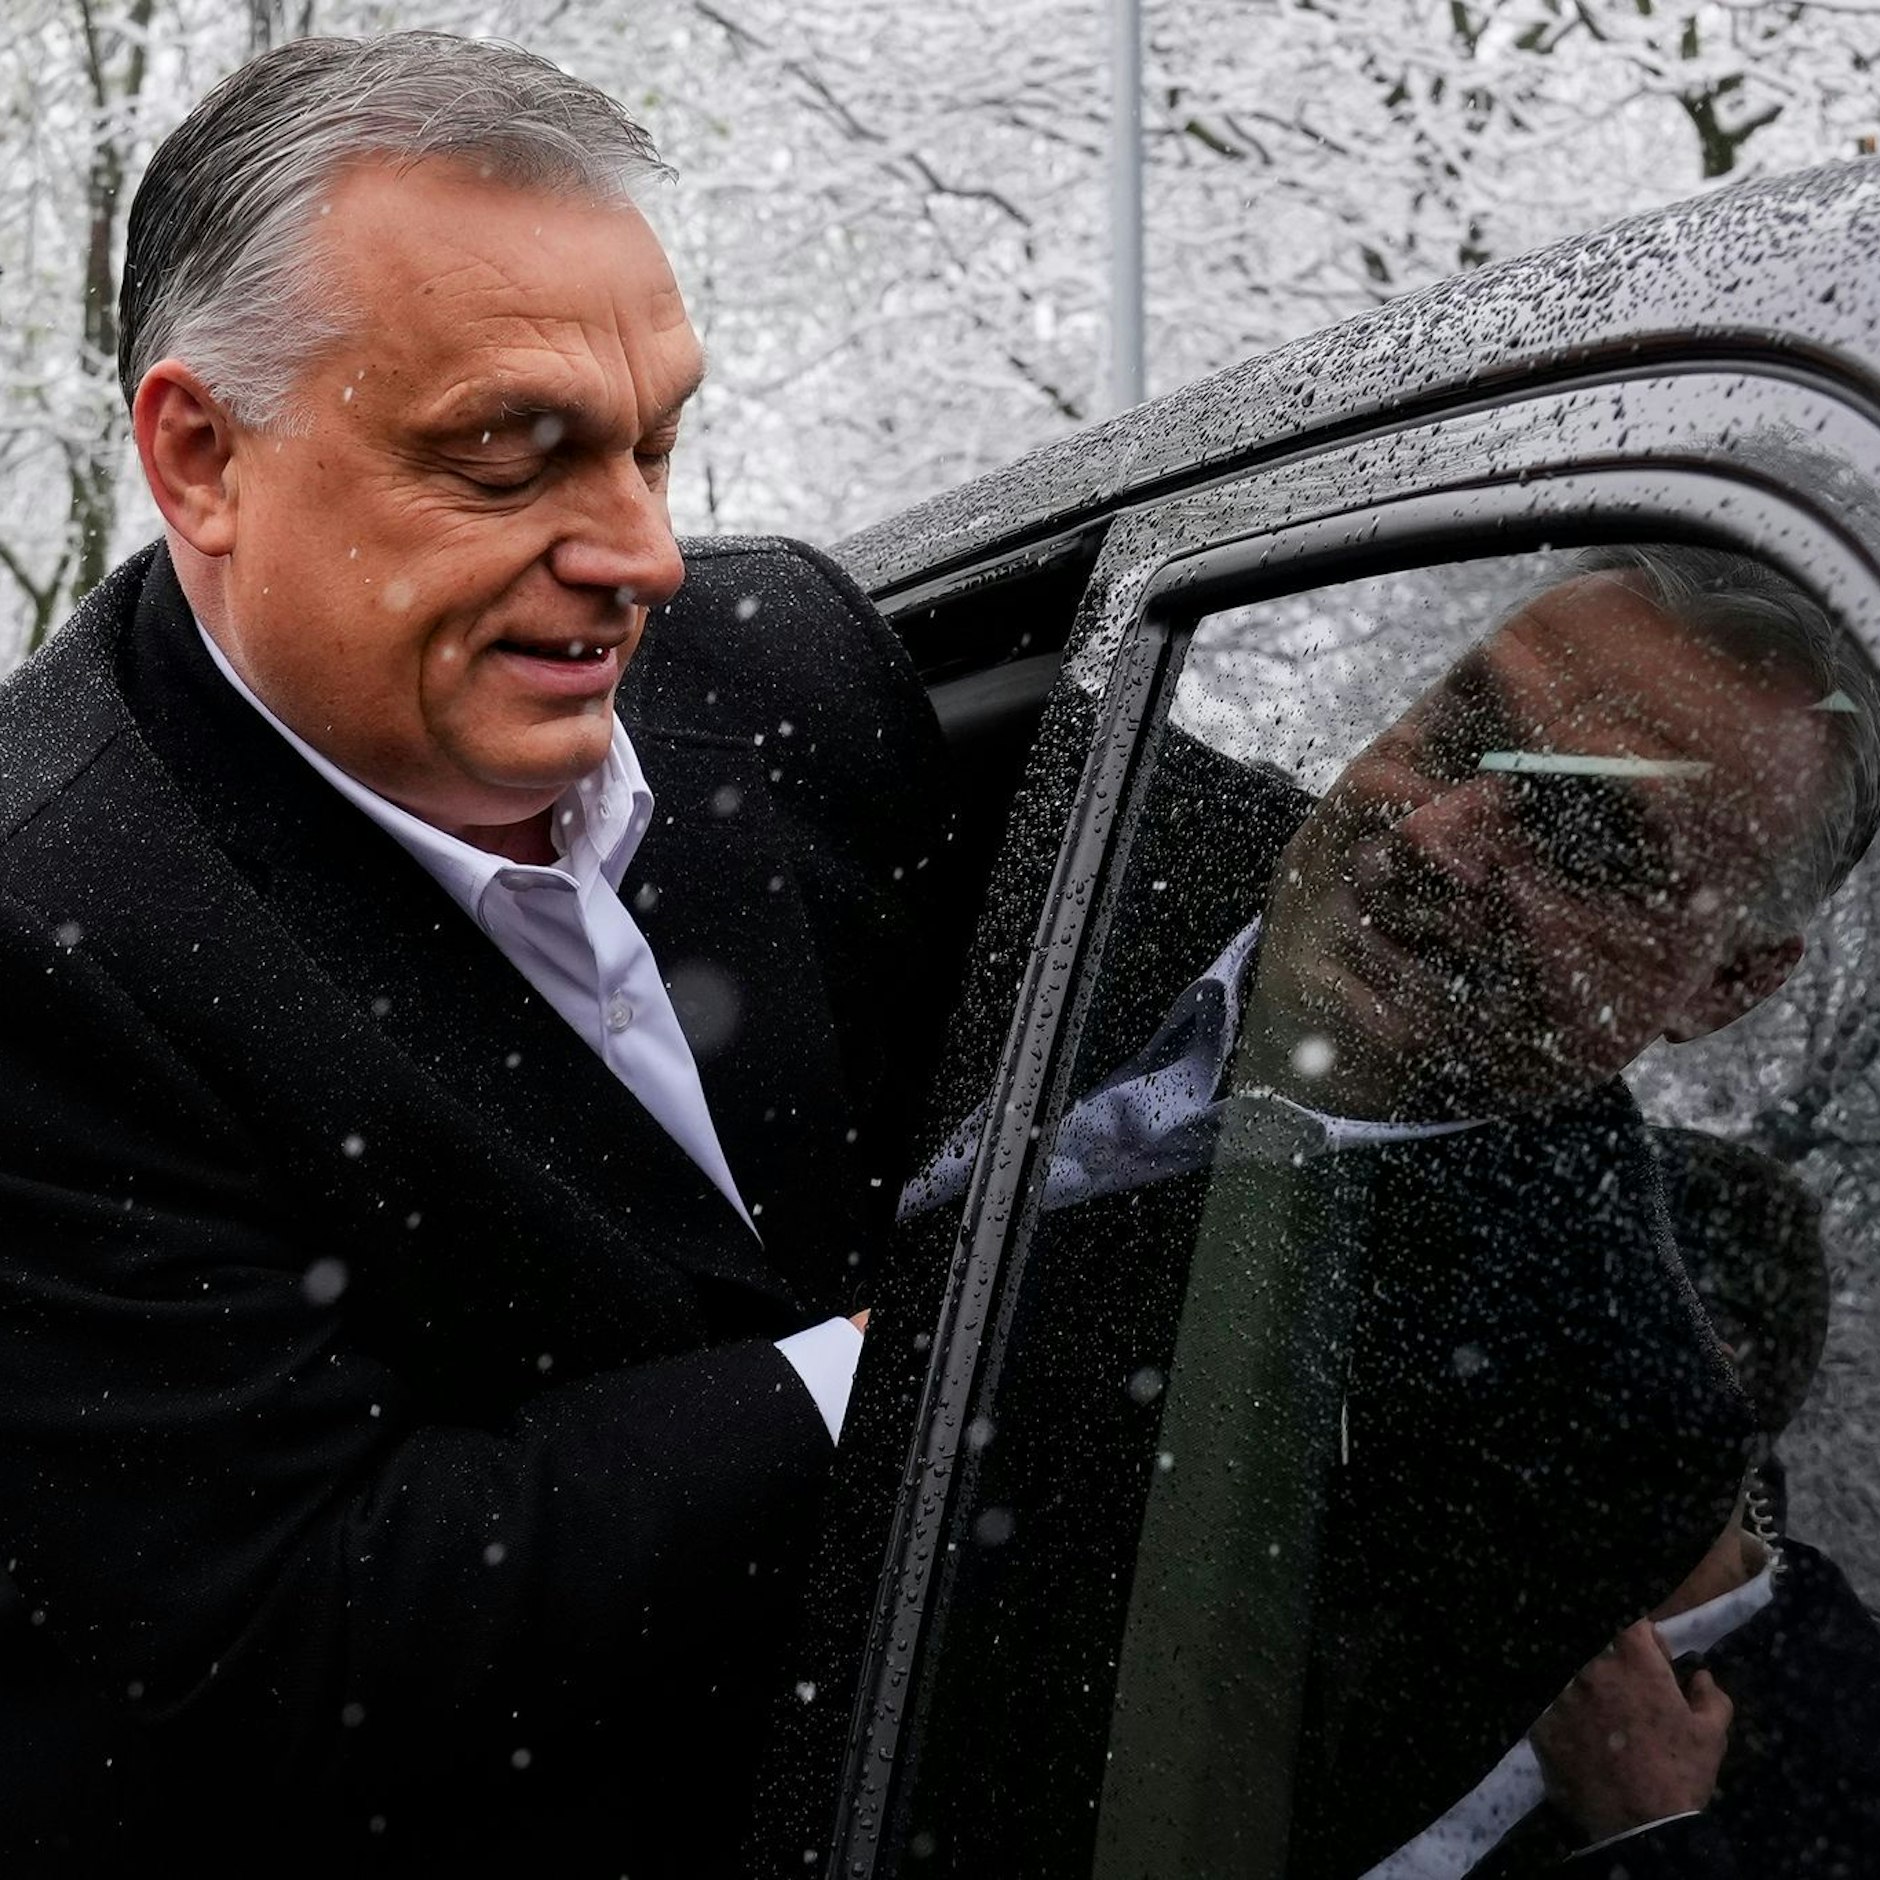 Image - Bei Parlamentswahl in Ungarn zeichnet sich weitere Amtszeit für Orban ab